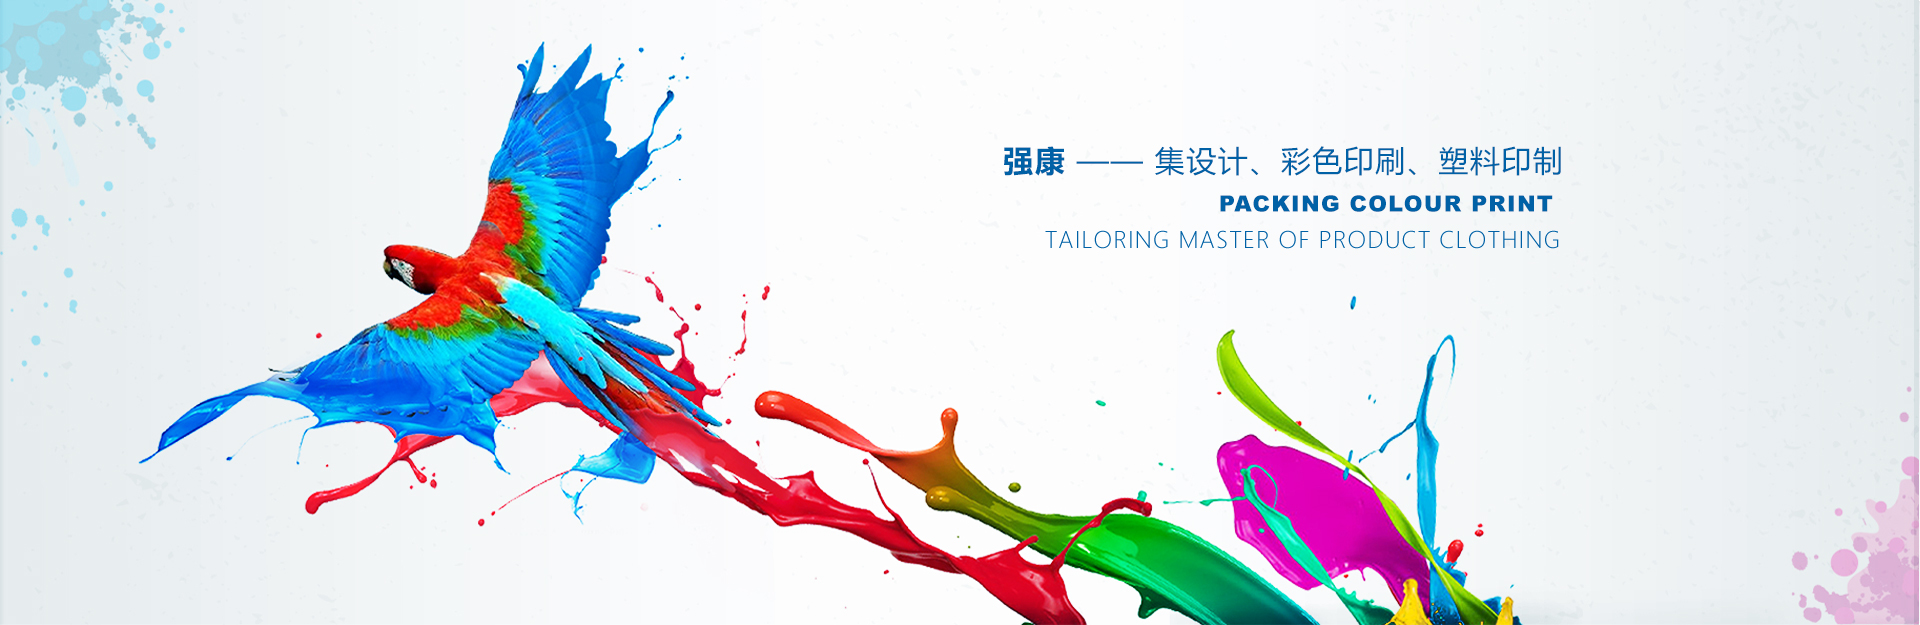 廣西南寧強康塑料彩印包裝有限公司是塑料袋廠家、復合袋廠家